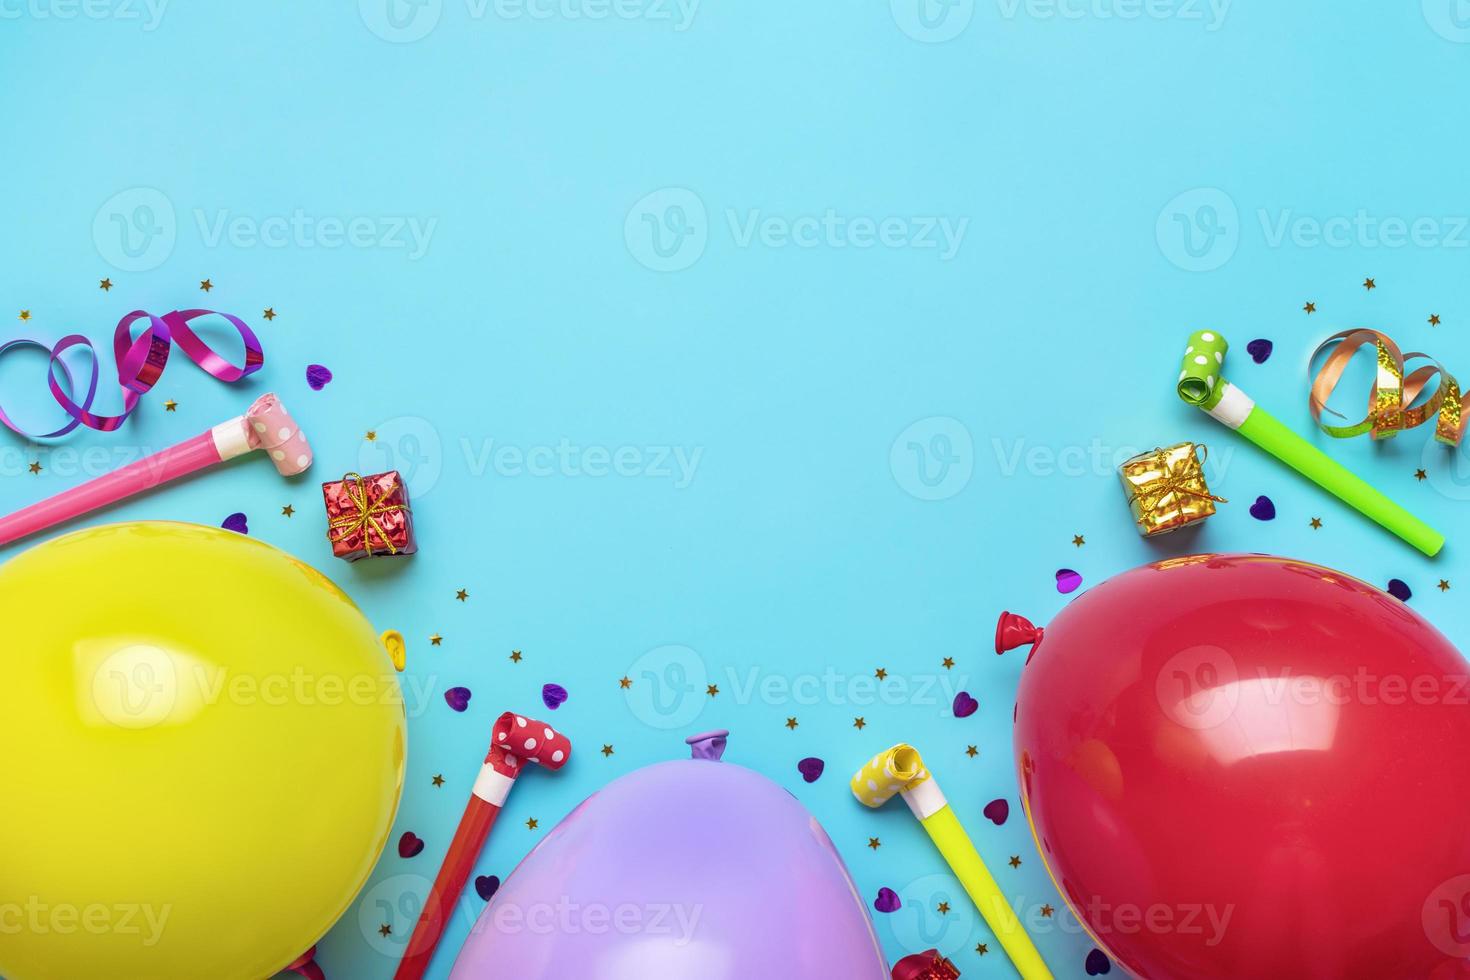 kleurrijk partij kader met rood geschenk doos met divers partij confetti, ballonnen, wimpels, pokeren en decoraties Aan blauw achtergrond. vakantie kaart vlak leggen top visie gelukkig verjaardag partij concept foto